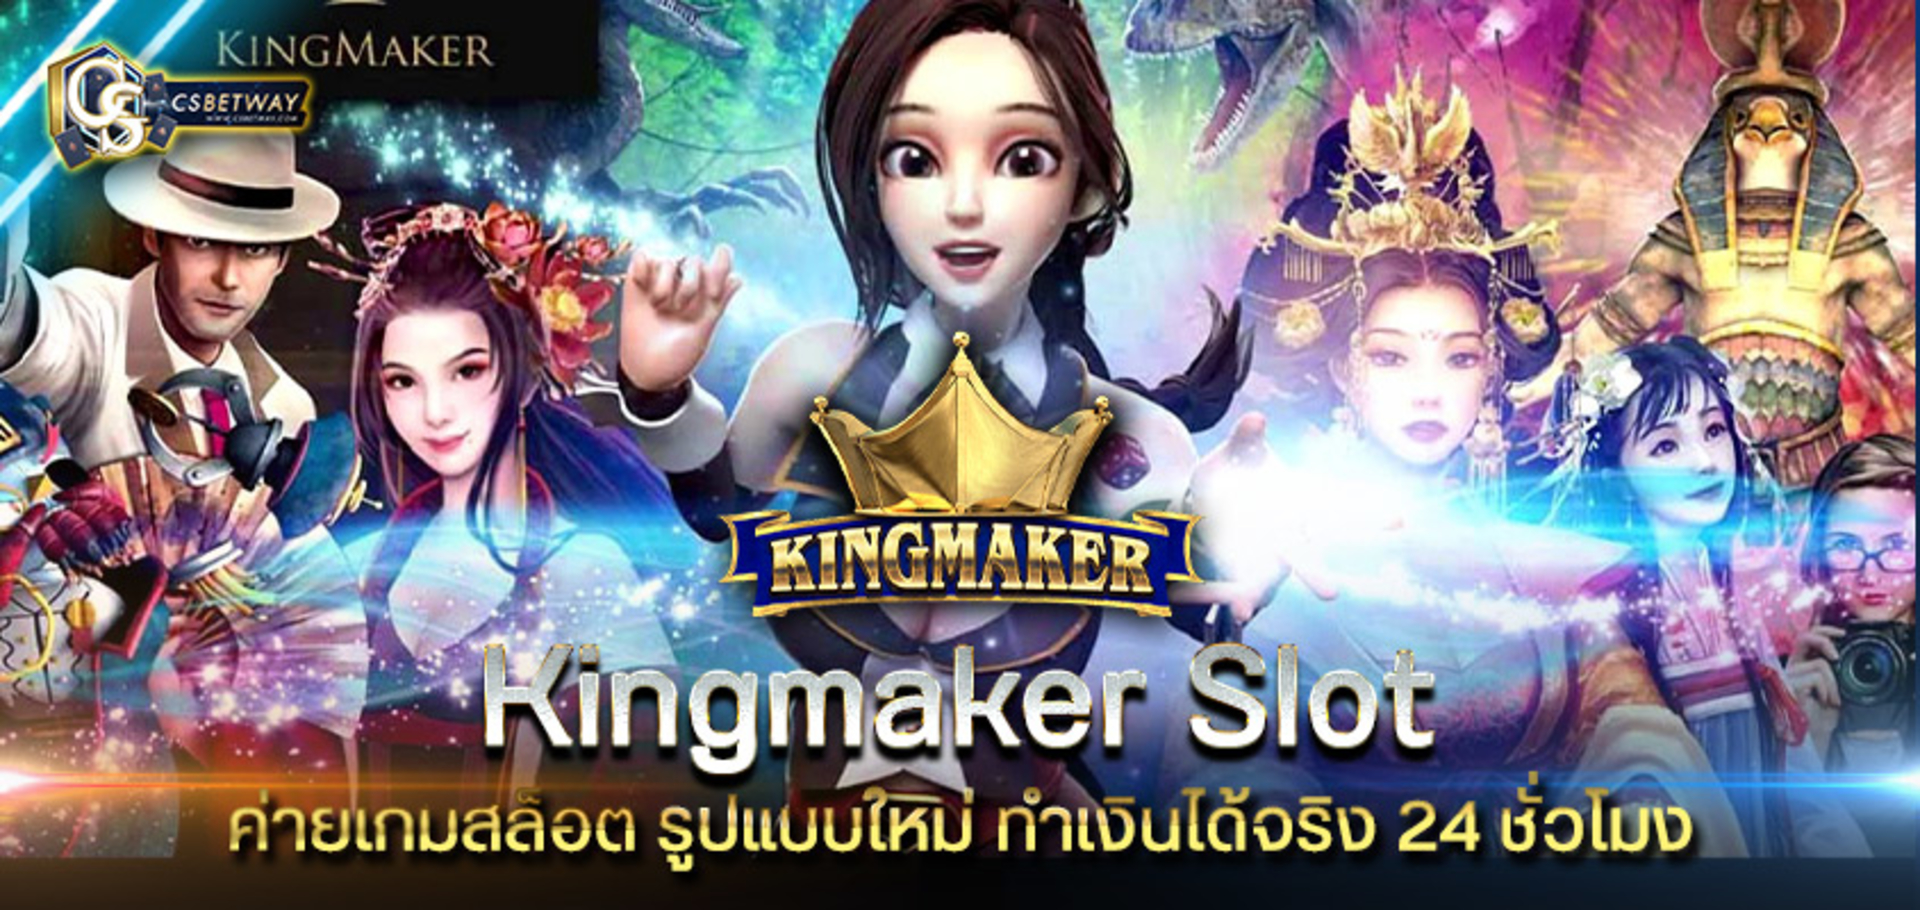 Kingmaker slot ค่ายเกมสล็อต รูปแบบใหม่ Kingmaker ทำเงินได้จริง 24 ชั่วโมง